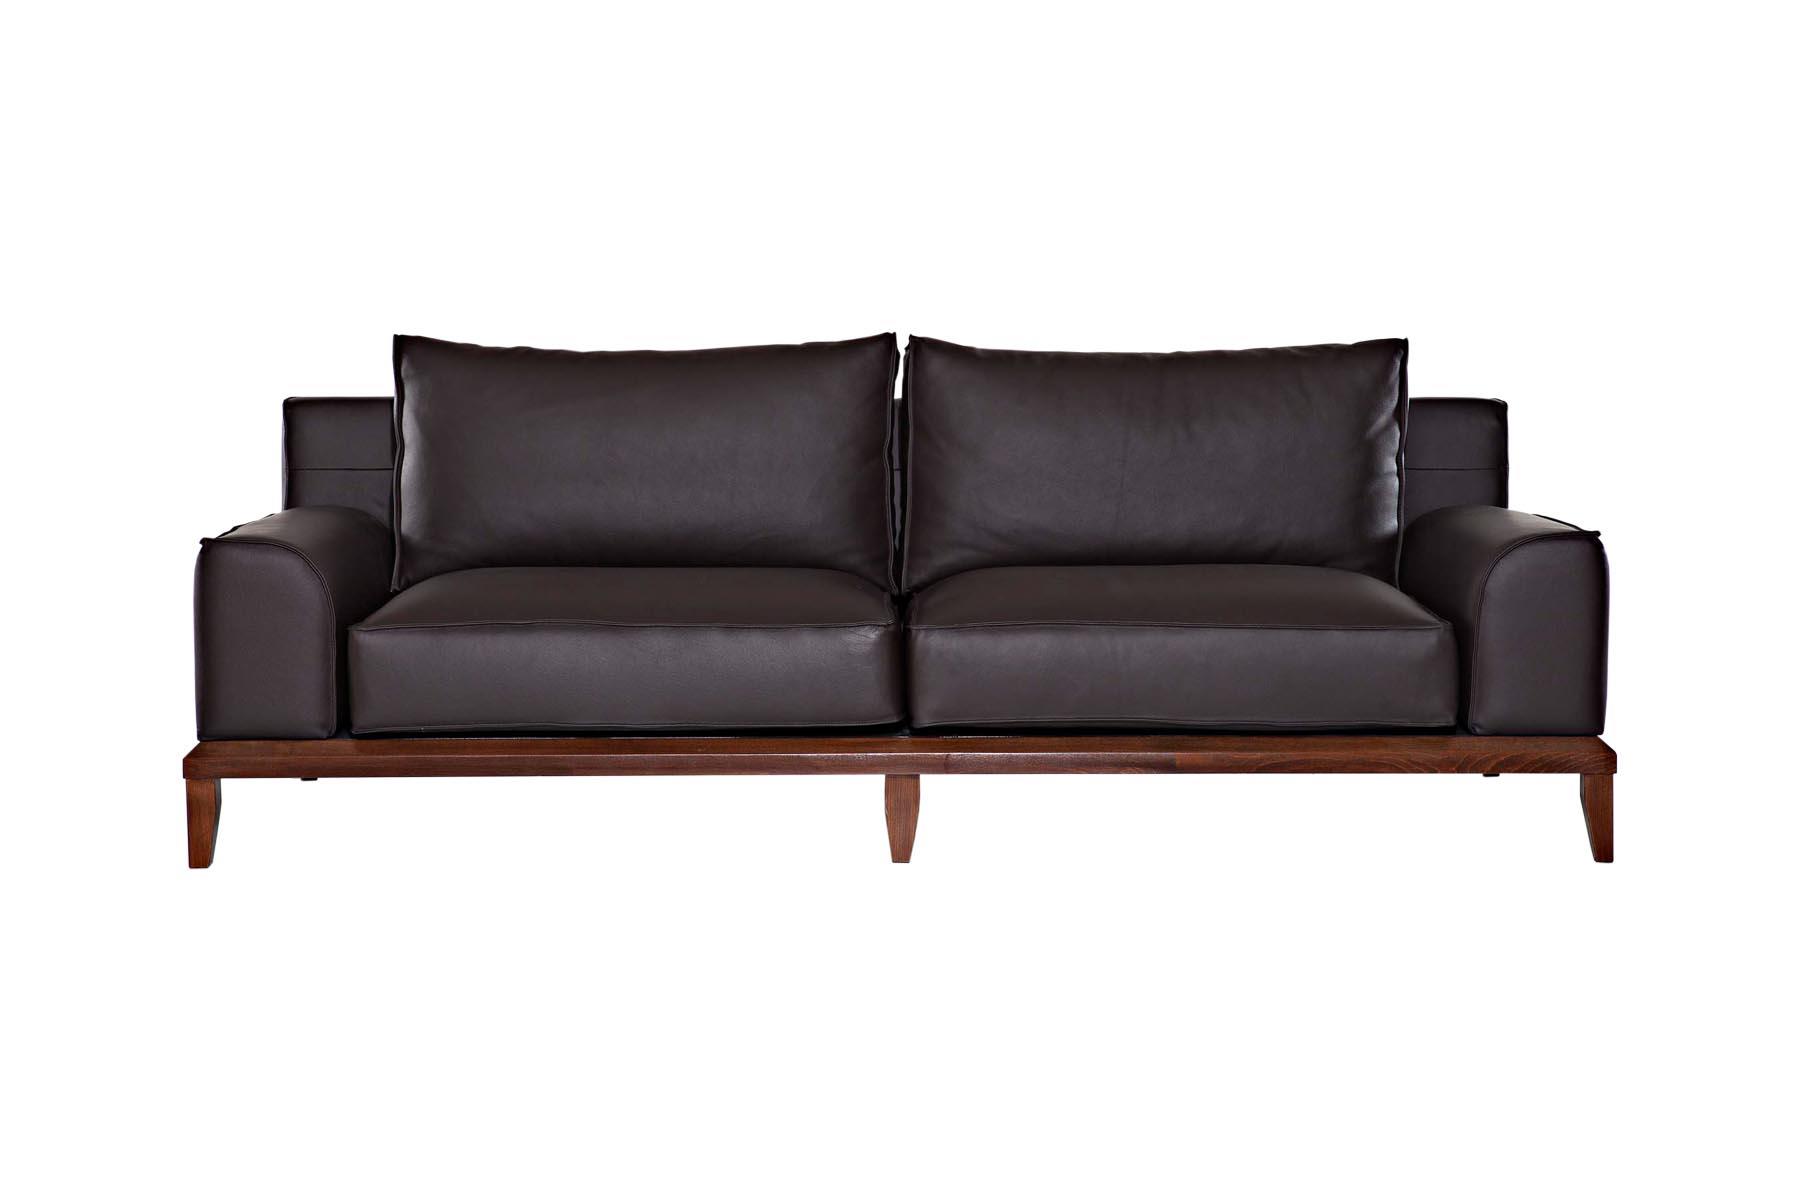 Izuzetno luksuzna sofa. Njena specifična konstrukcija i udobnost upotpunjuju svaki prostor i čine ga ekskluzivnijim.